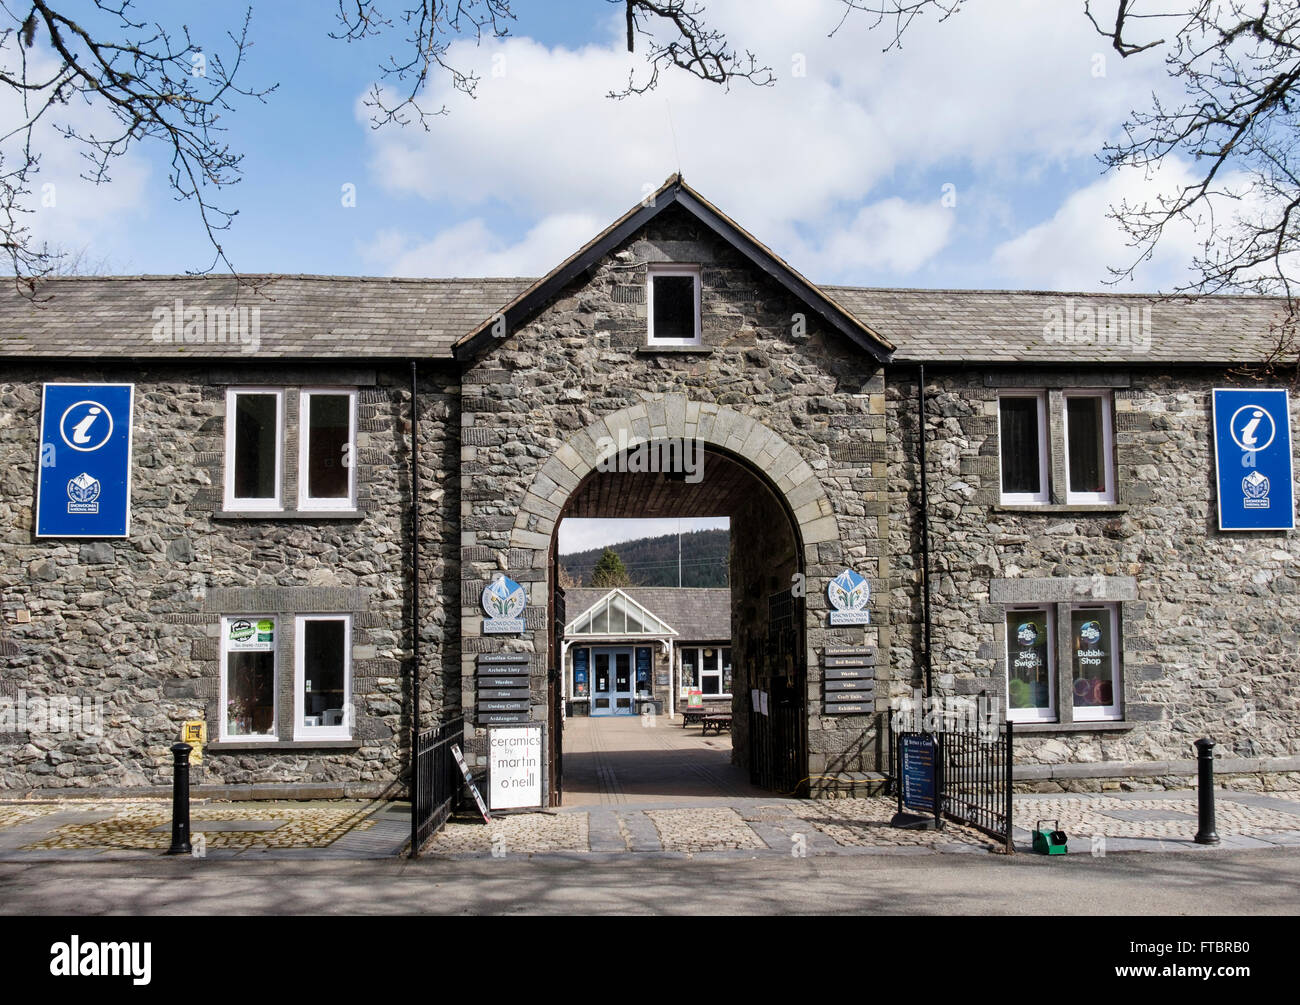 Information touristique en centre d'Information du Parc National de Snowdonia avec boutiques d'artisanat dans la Royal Oak d'équitation Betws-Y-Coed Conwy Wales Banque D'Images